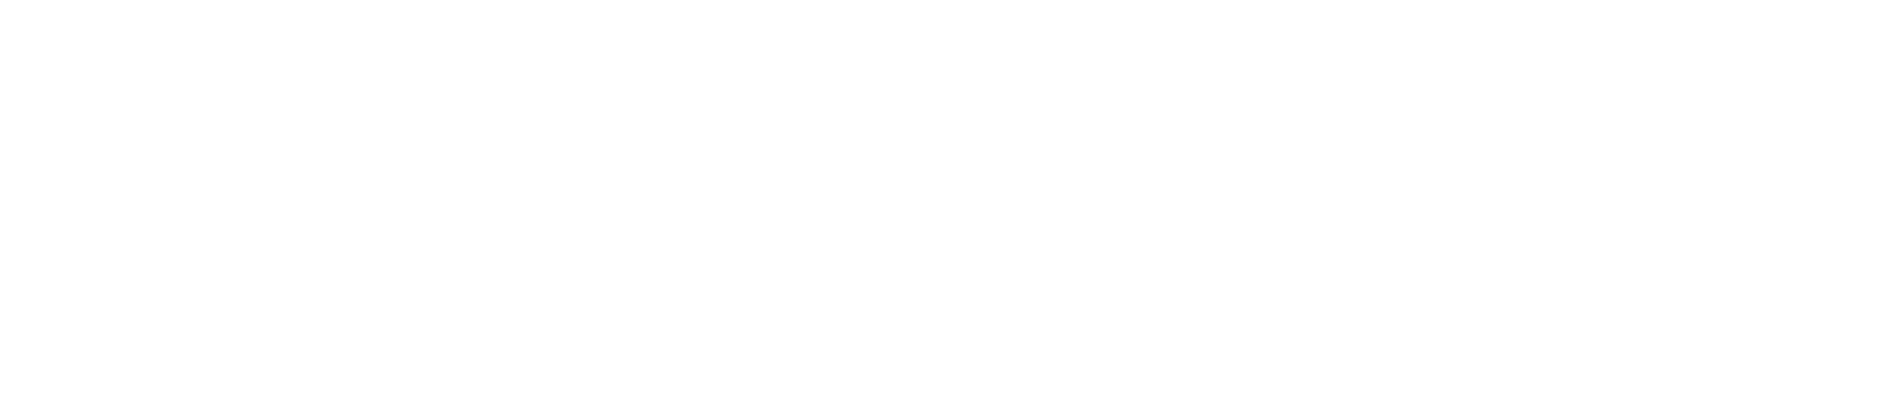 My Heart Studio | Your Digital Partner